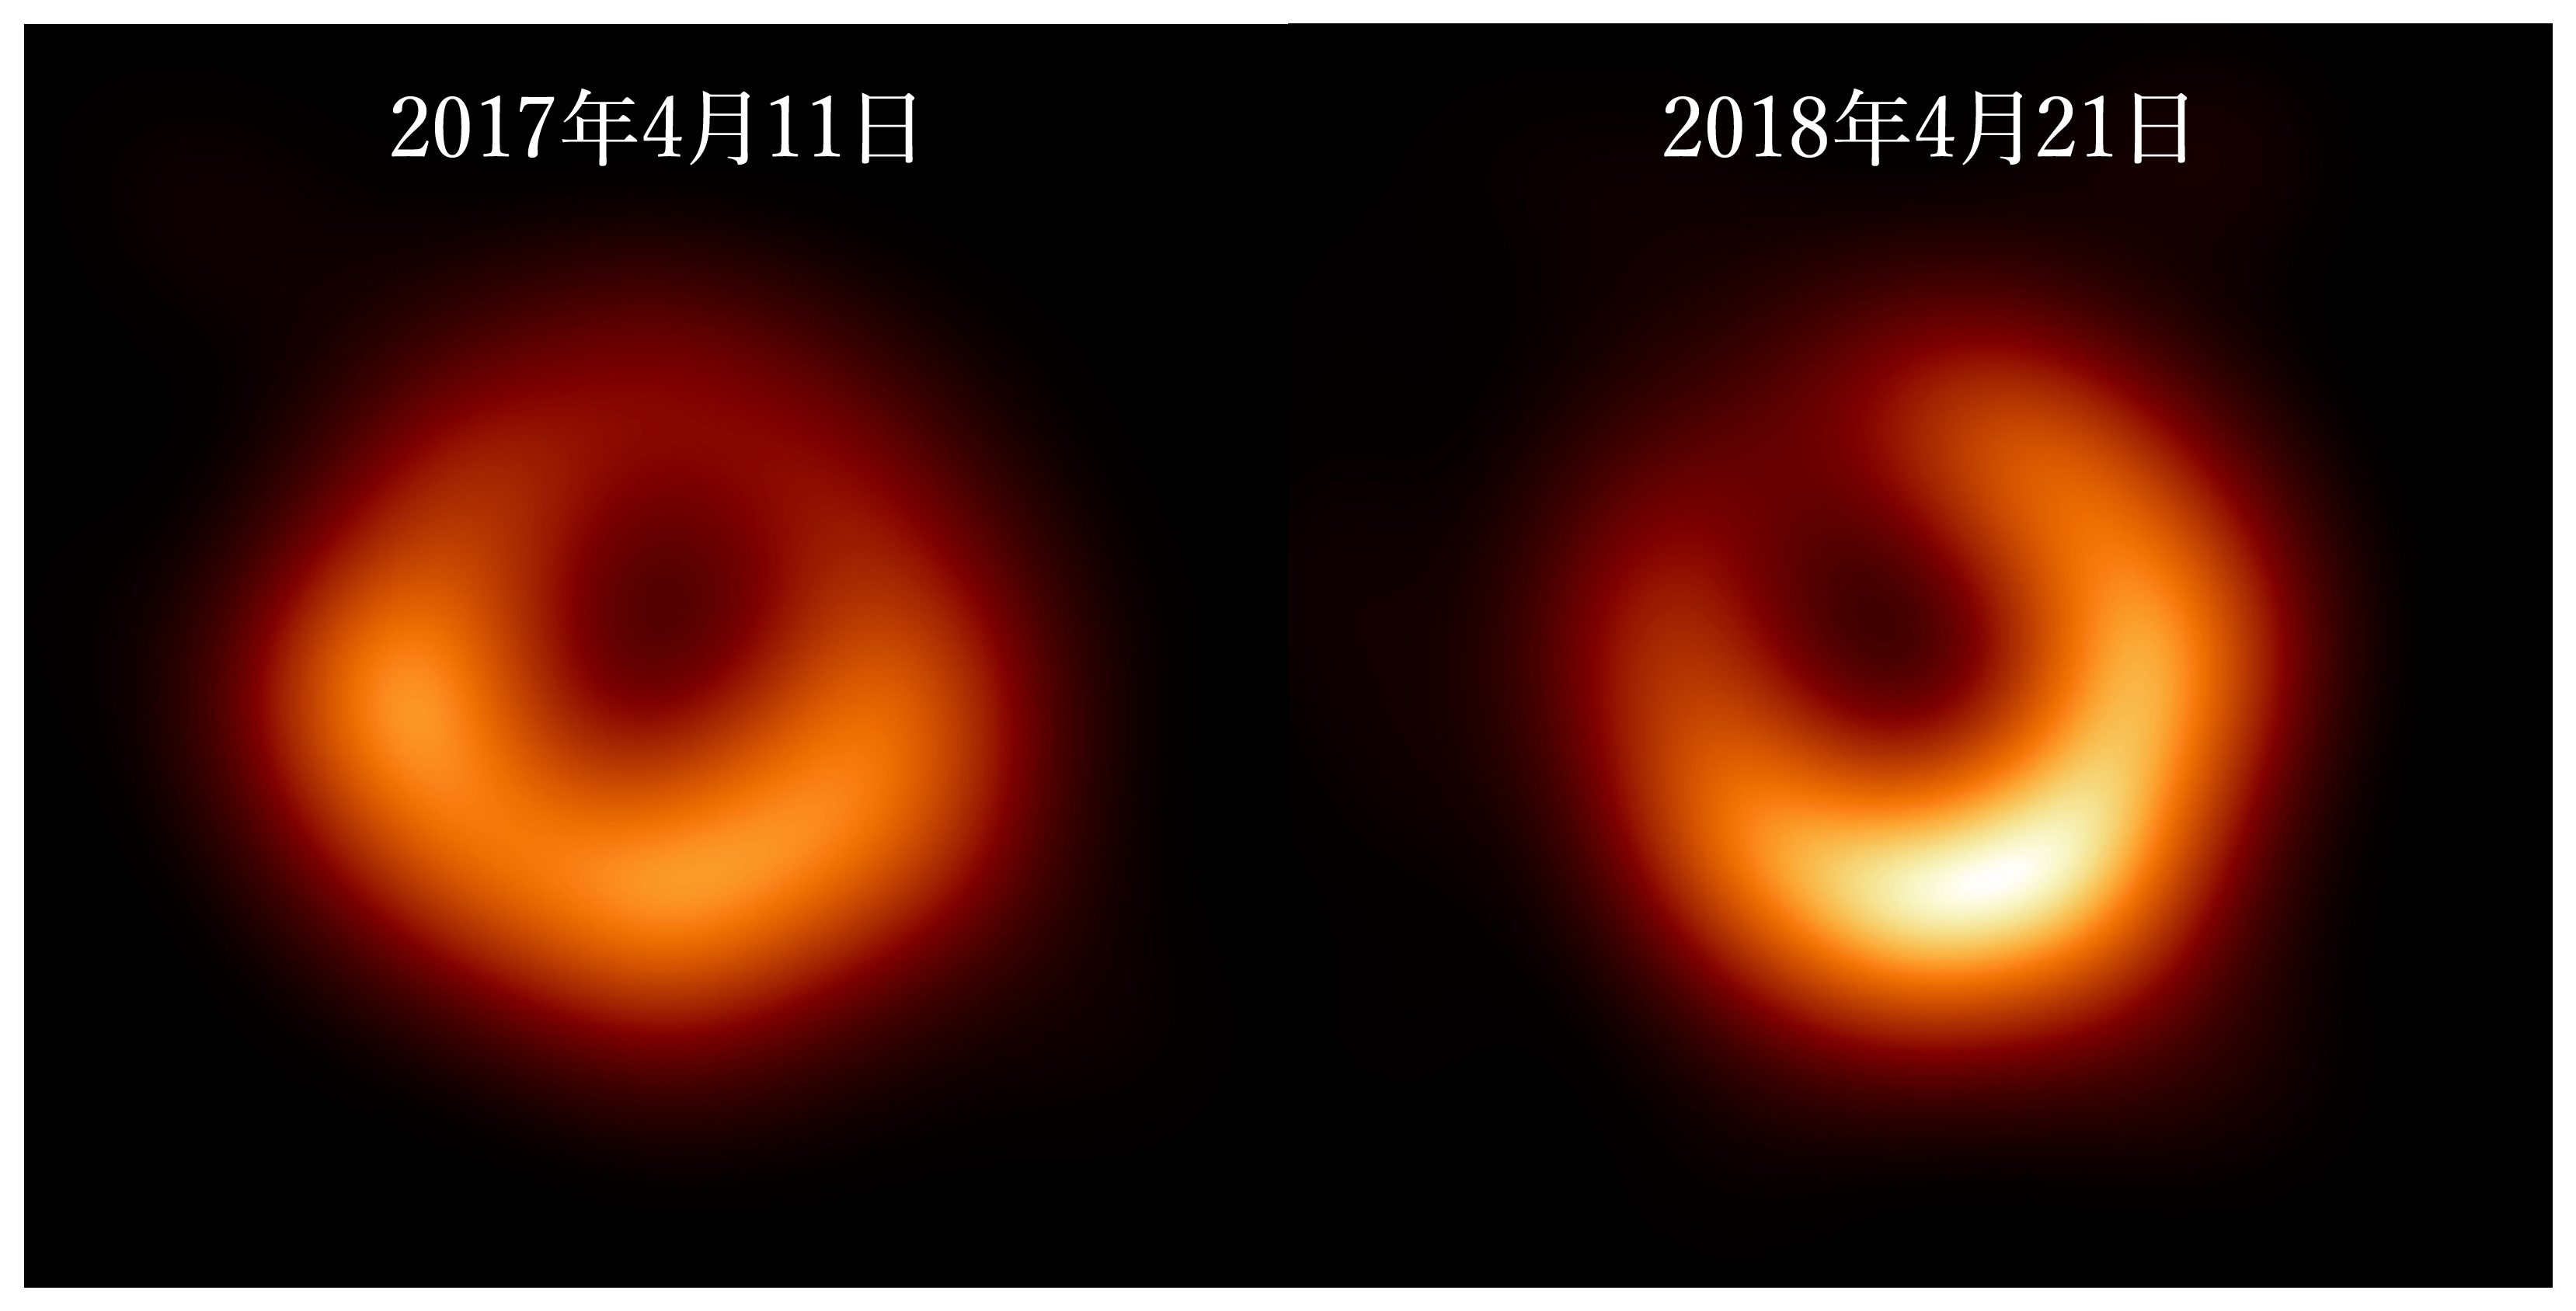 初撮影から1年後のM87ブラックホールの姿